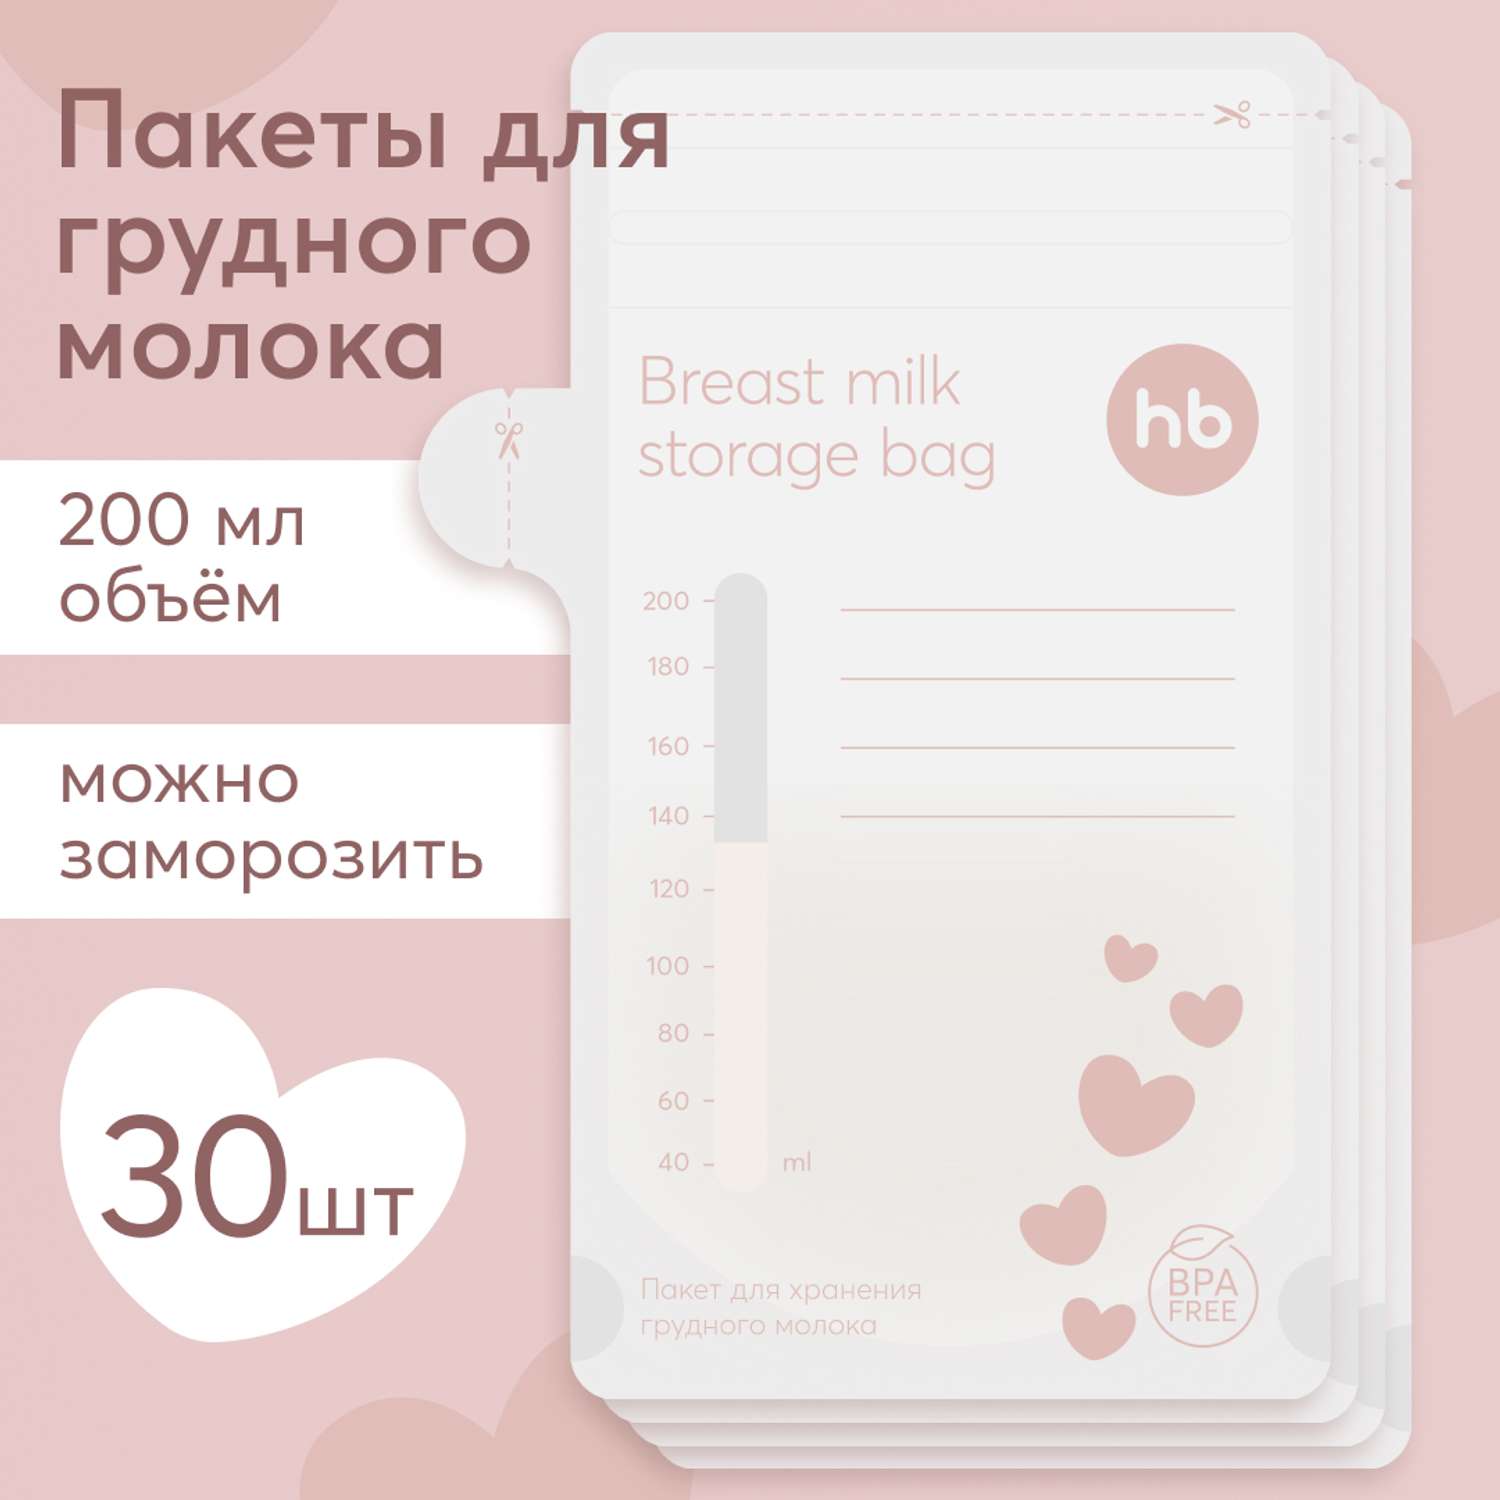 Пакеты для грудного молока Happy Baby набор 30 шт для хранения и заморозки - фото 1